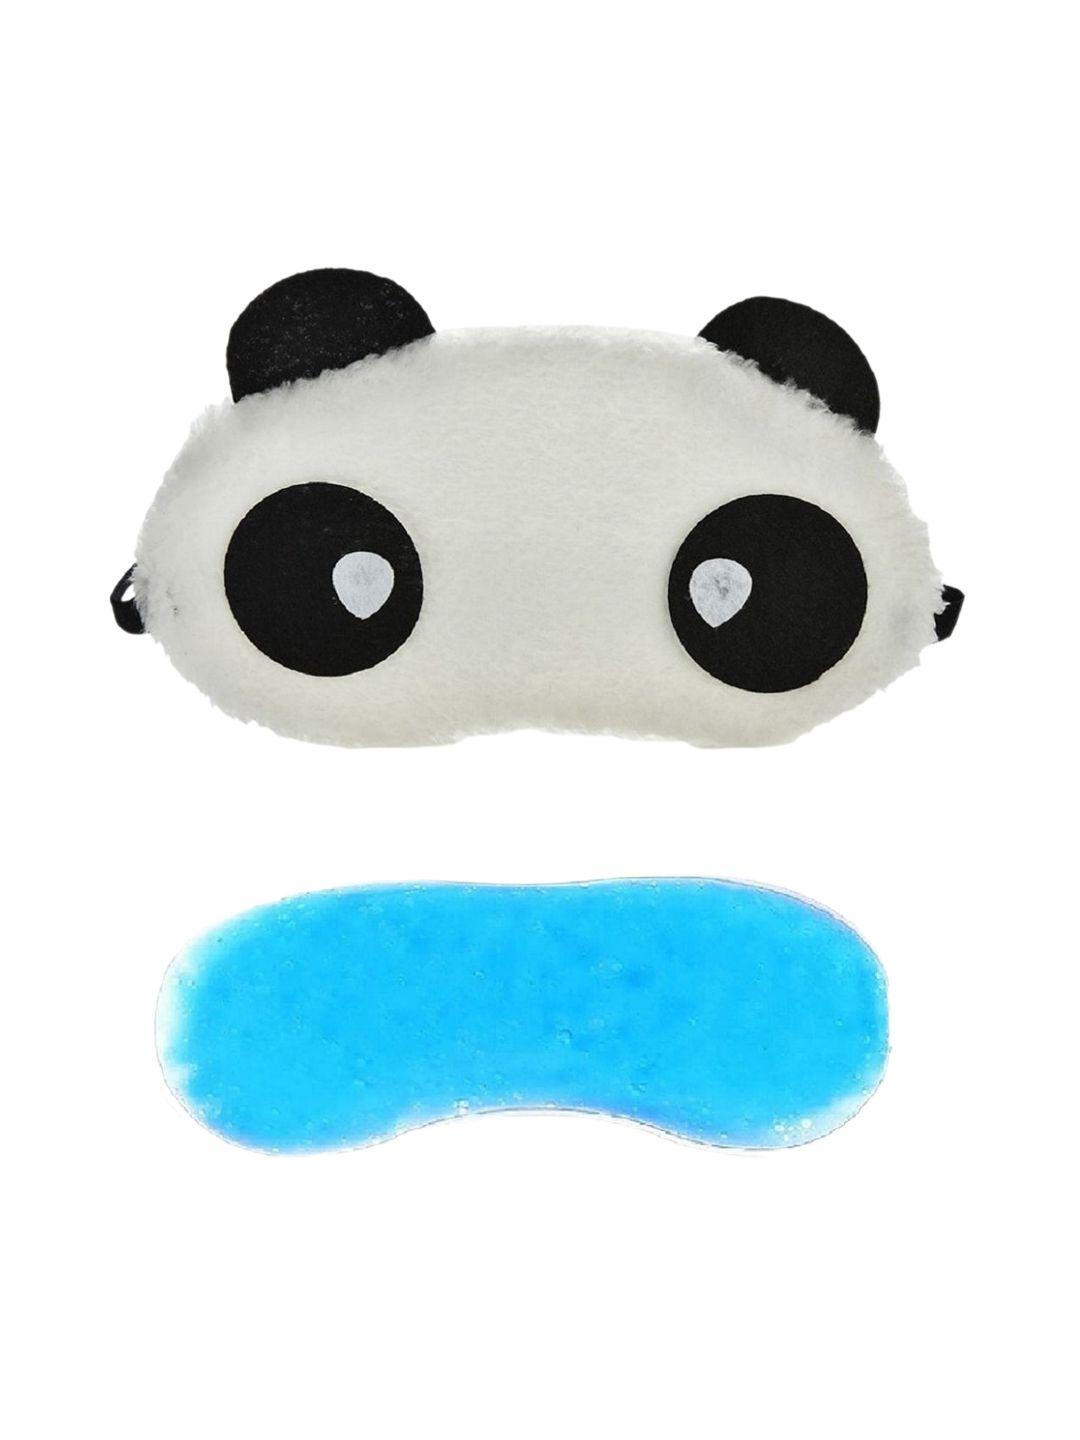 jenna white & black panda sleeping eye mask with gel